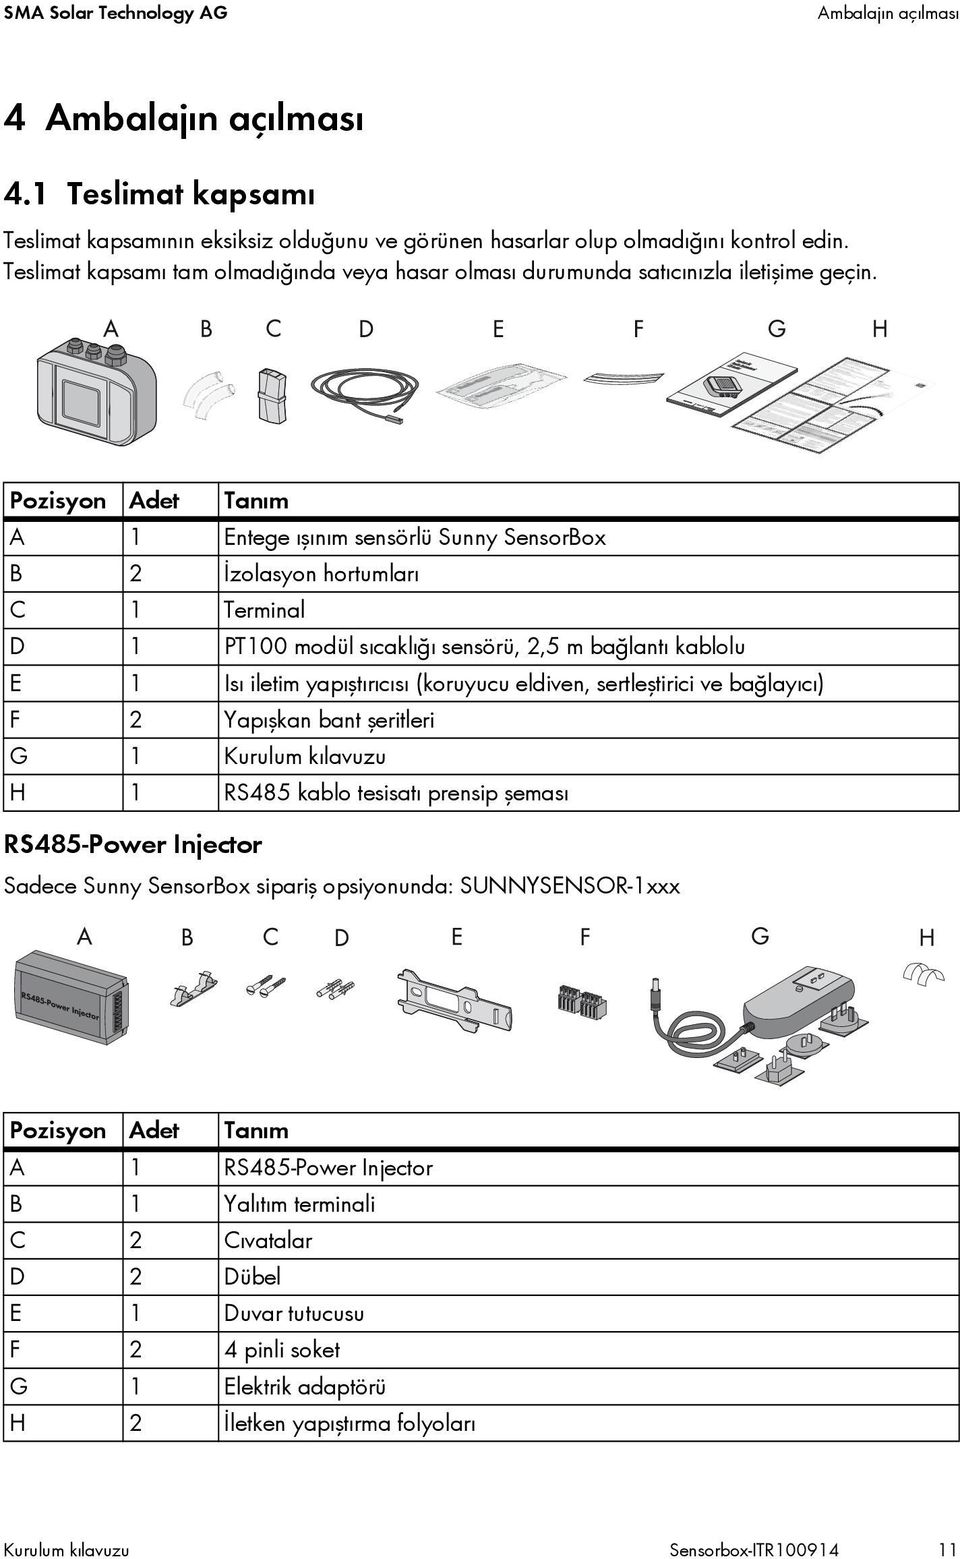 Pozisyon Adet Tanım A 1 Entege ışınım sensörlü Sunny SensorBox B 2 İzolasyon hortumları C 1 Terminal D 1 PT100 modül sıcaklığı sensörü, 2,5 m bağlantı kablolu E 1 Isı iletim yapıştırıcısı (koruyucu